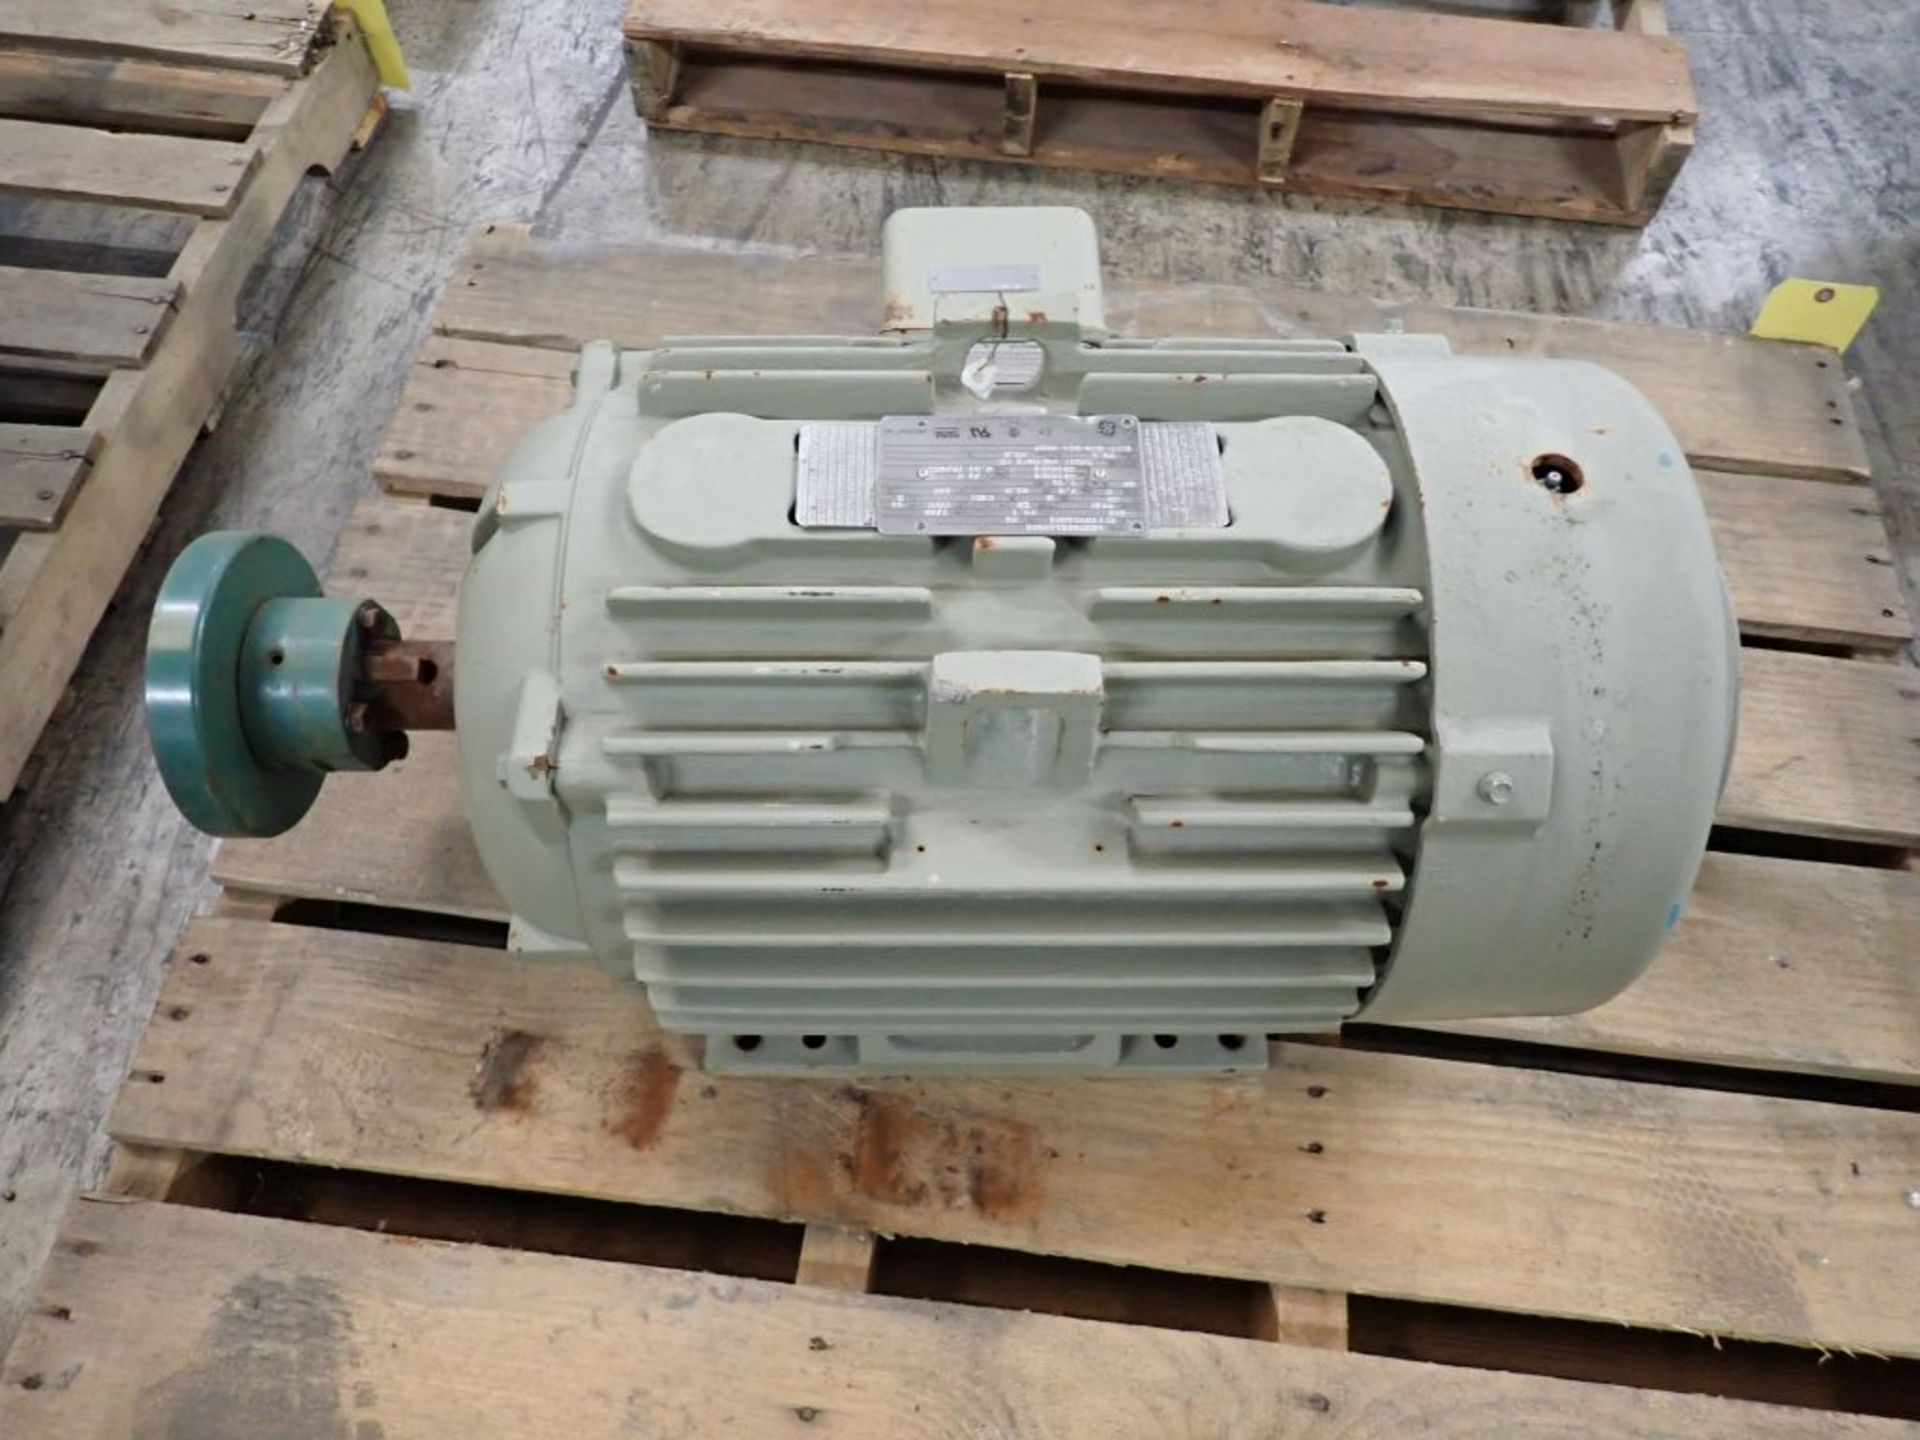 GE 25 HP Motor | Model No. 5KS284XAA2060; 25 HP; 460V; 1780 RPM; 3PH; Tag: 244927 - Image 2 of 6